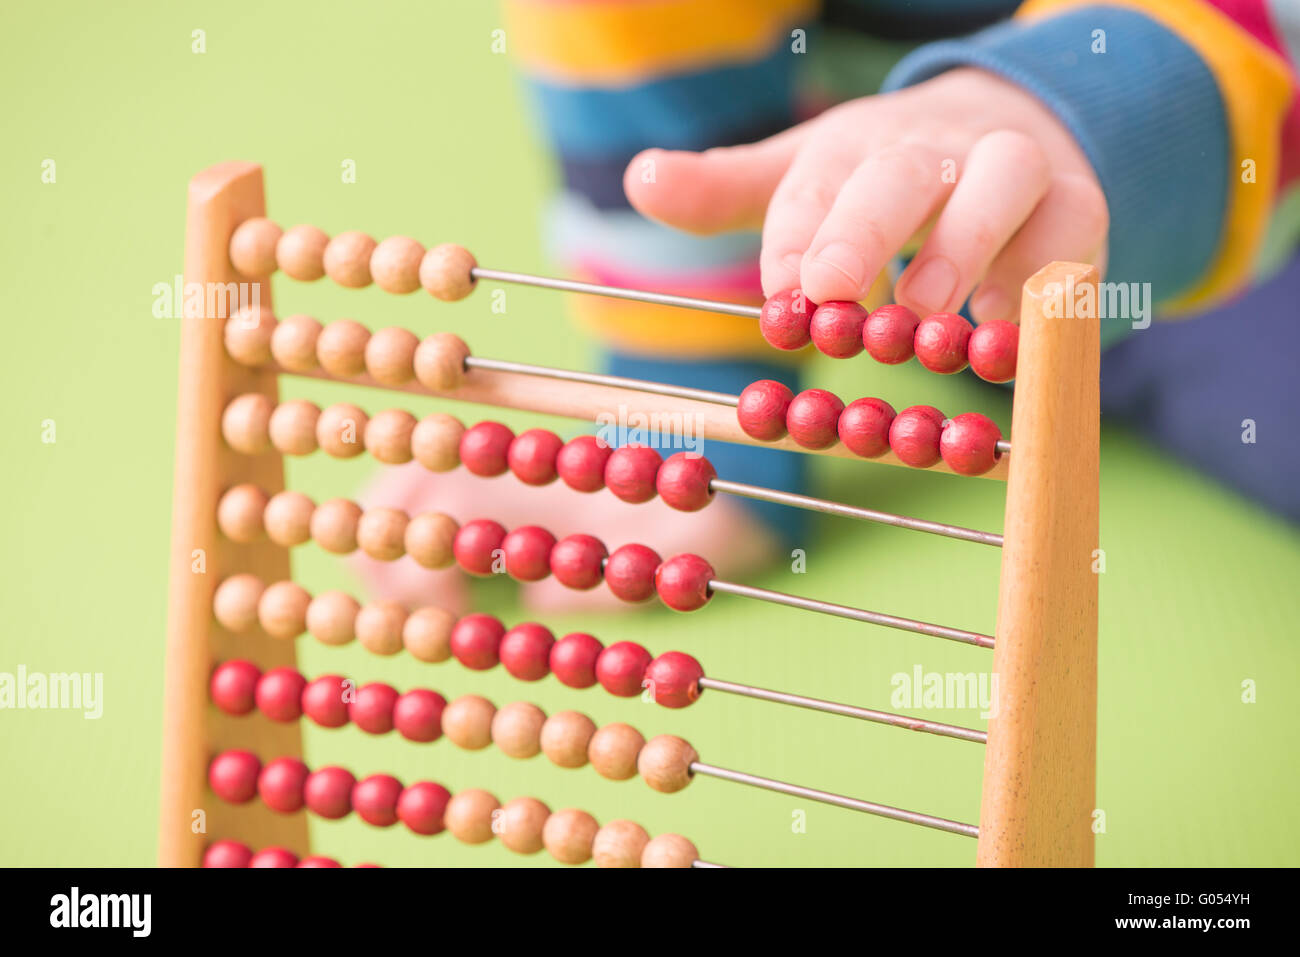 Bambino il conteggio a mano su abacus. Concetto di apprendimento dell'infanzia, alla matematica e all'inizio dell'istruzione. Foto Stock